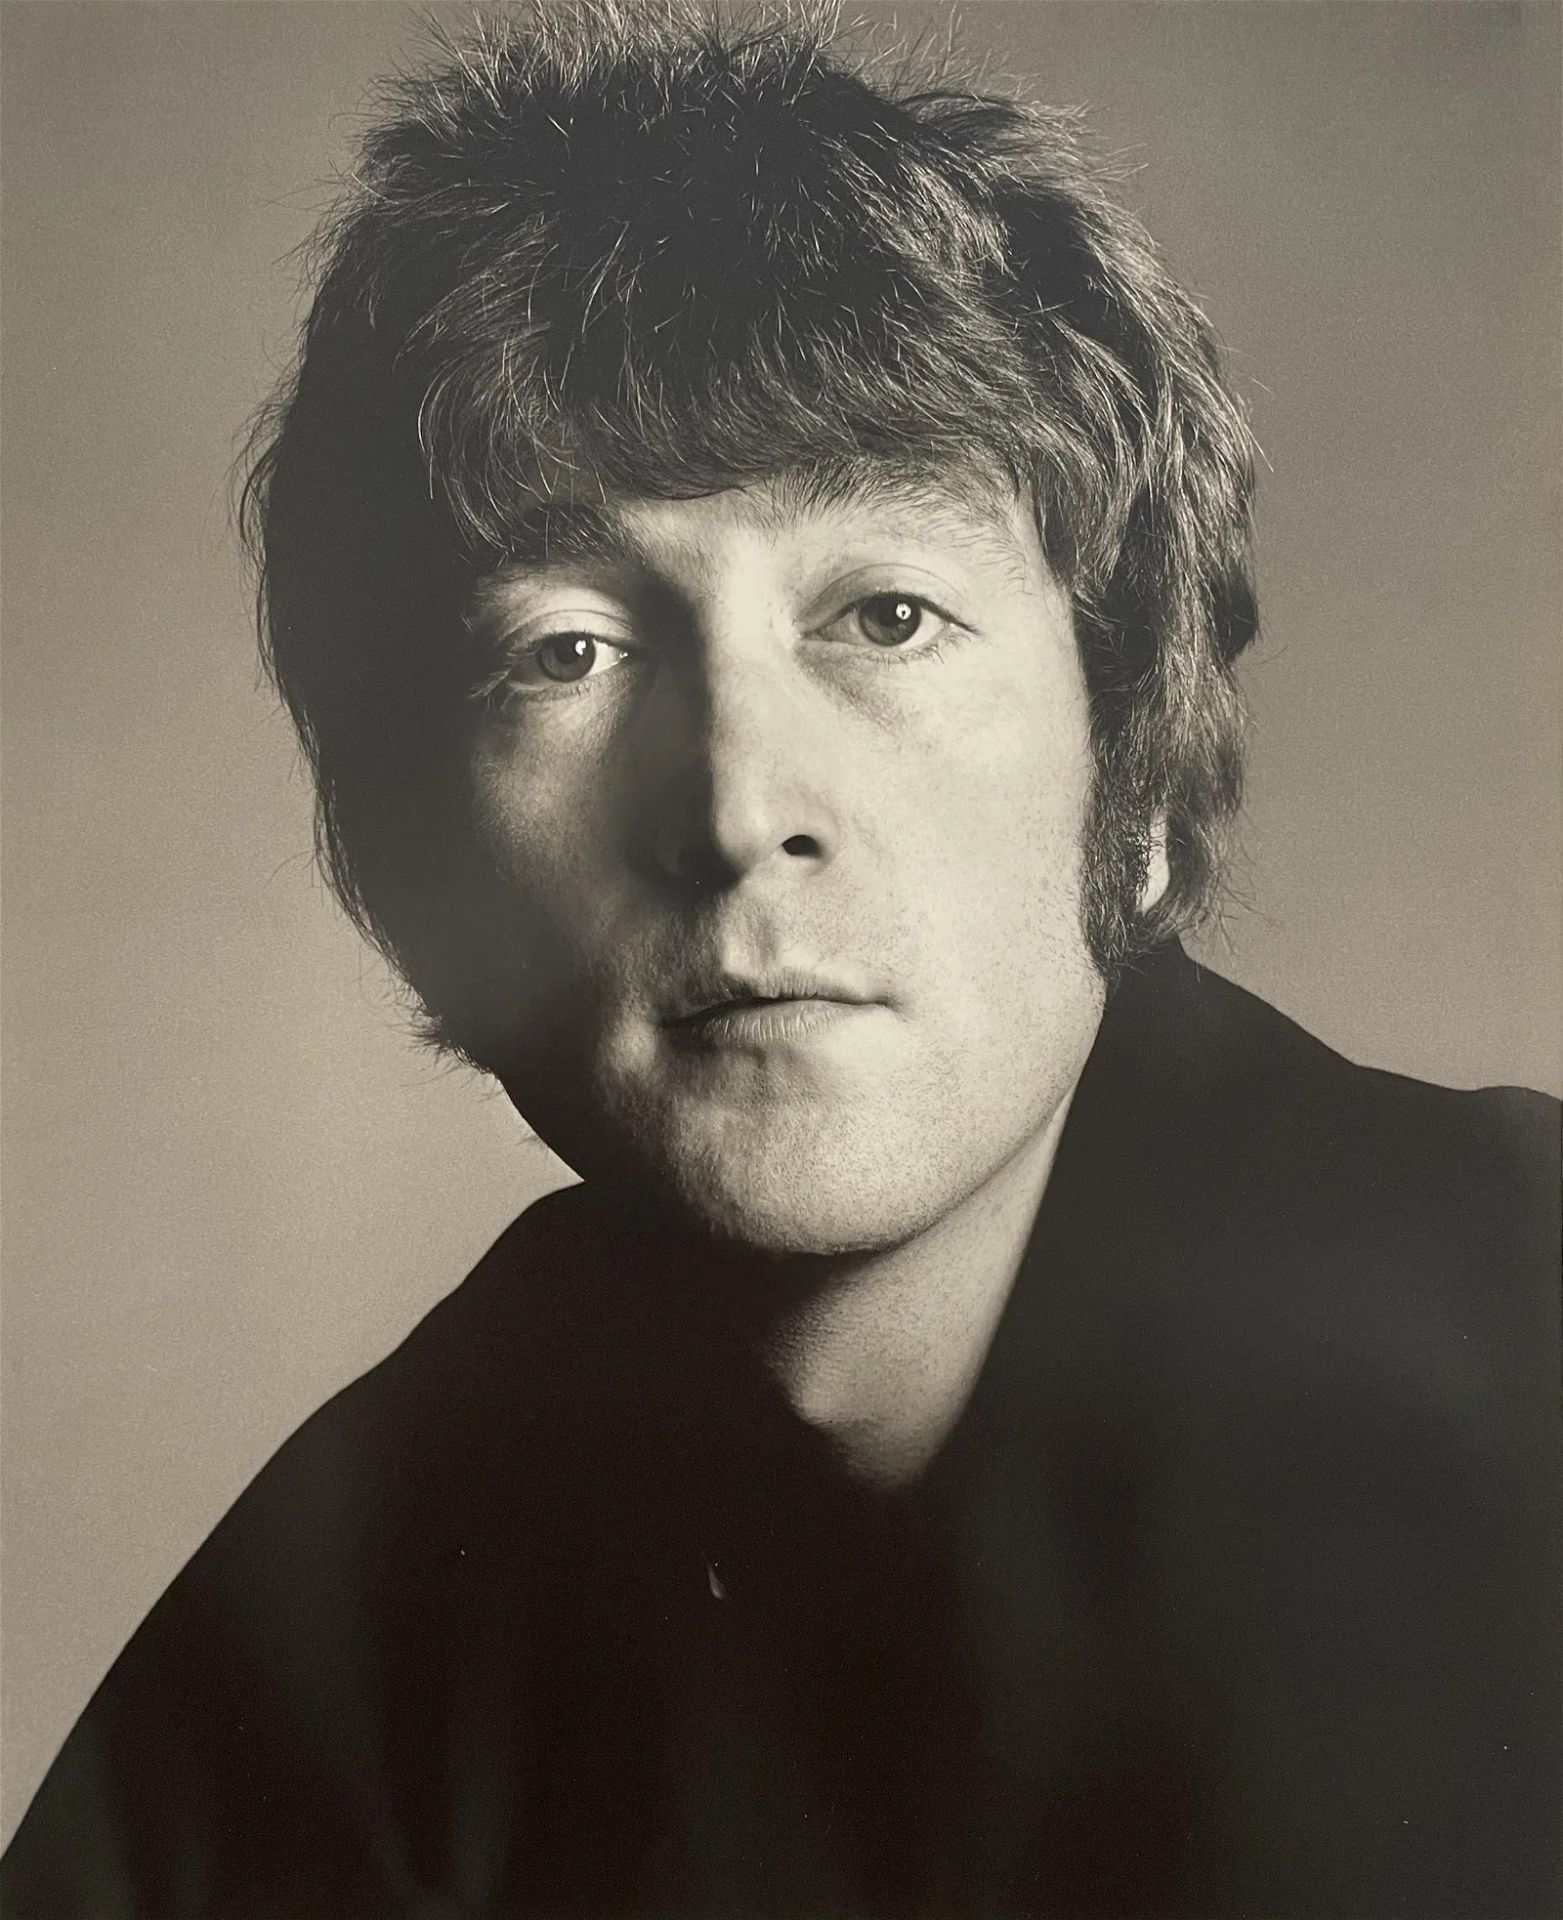 Richard Avedon "John Lennon" Print